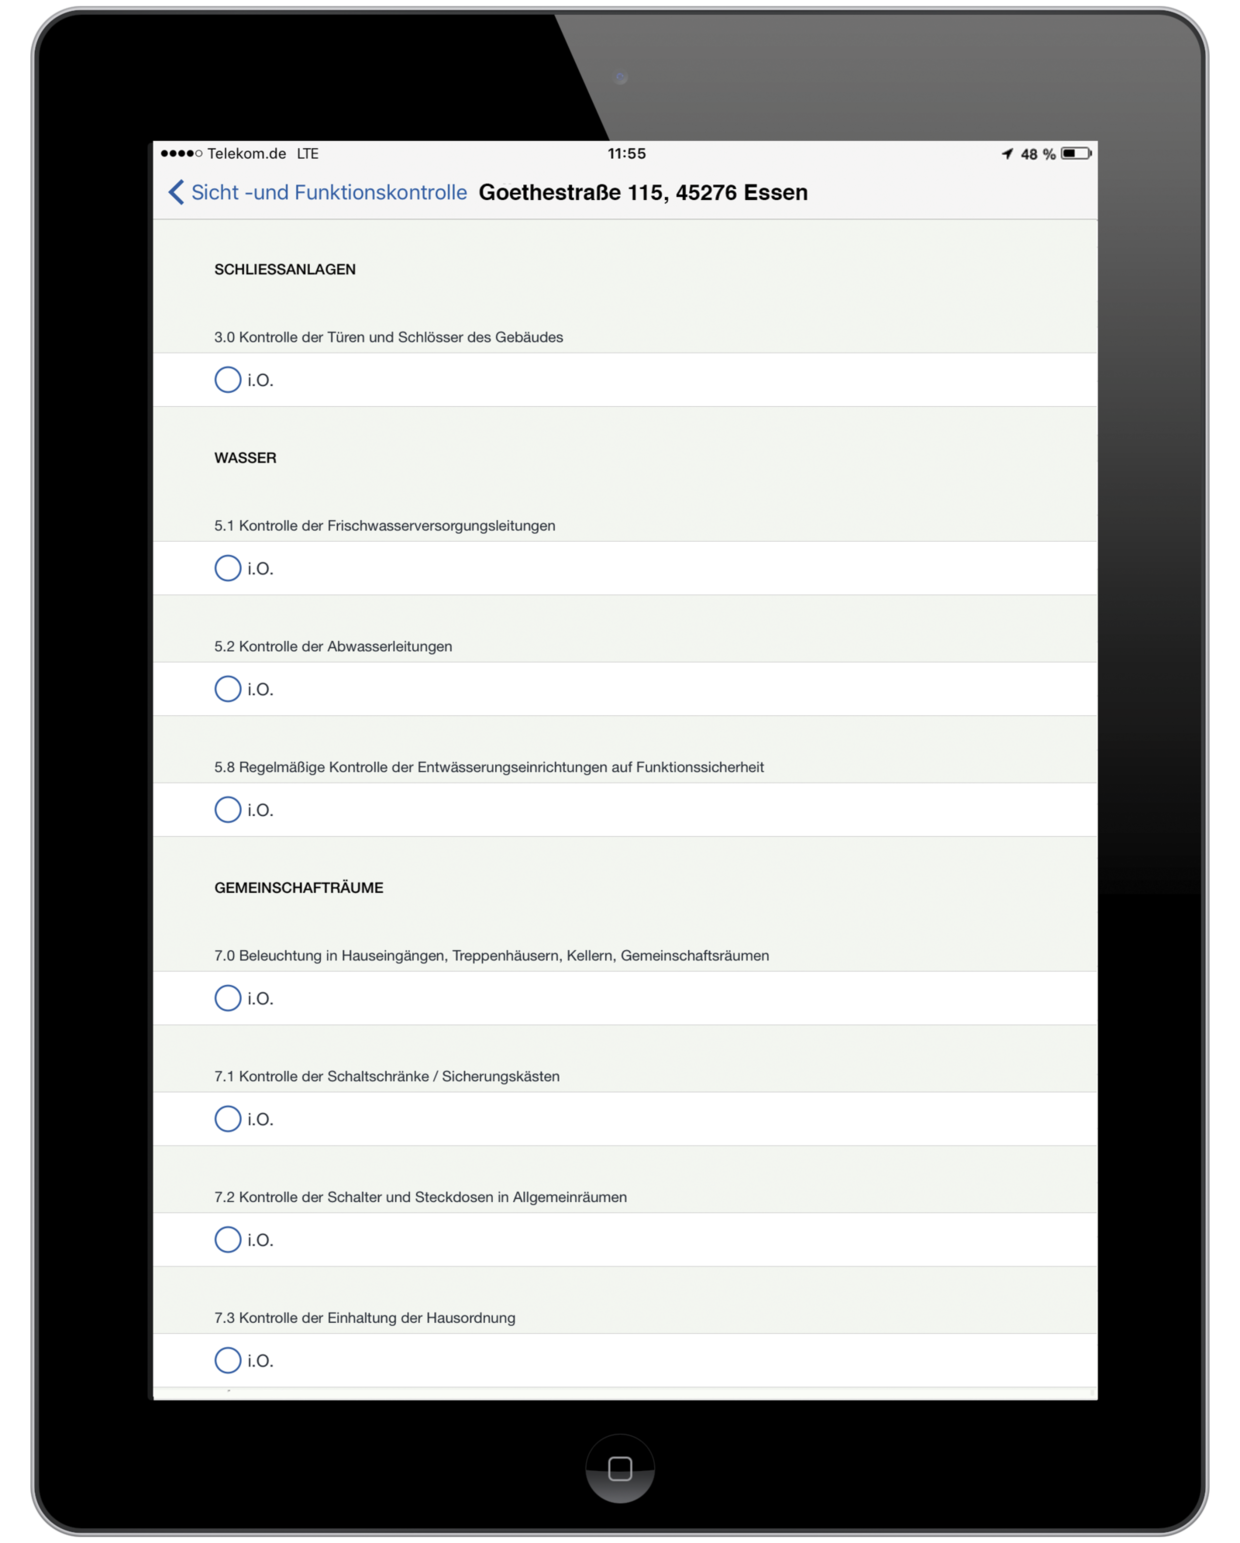 Digitales Formular einer Sicht- und Funktionskontrolle bei der Vonovia in der easysquare mobile App